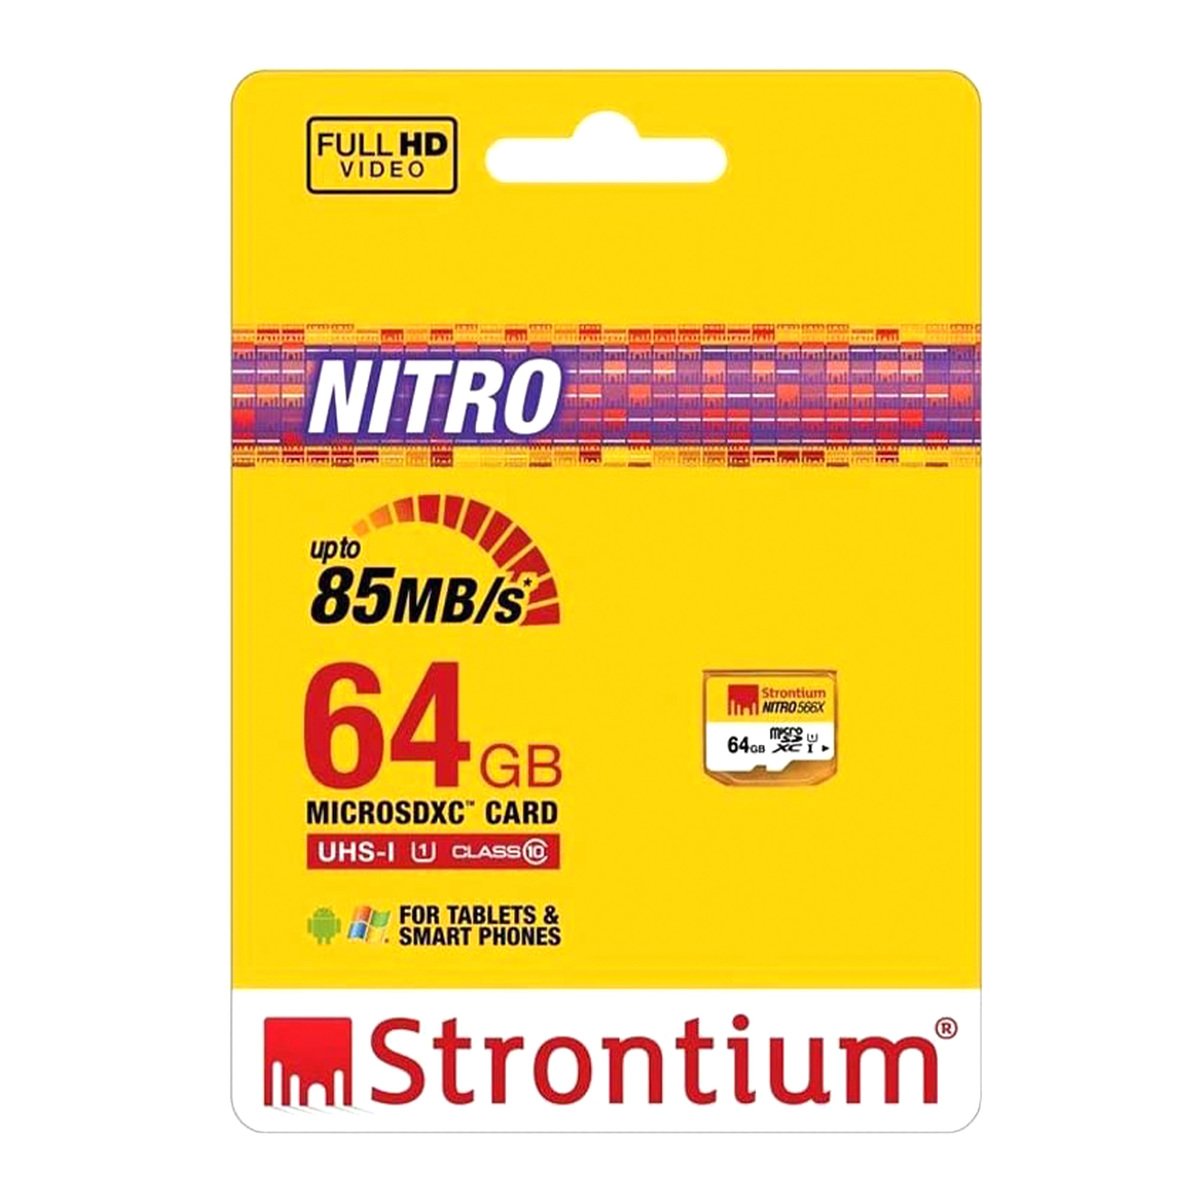 Strontium microSDHC Card SRN64GTFU3A 64GB